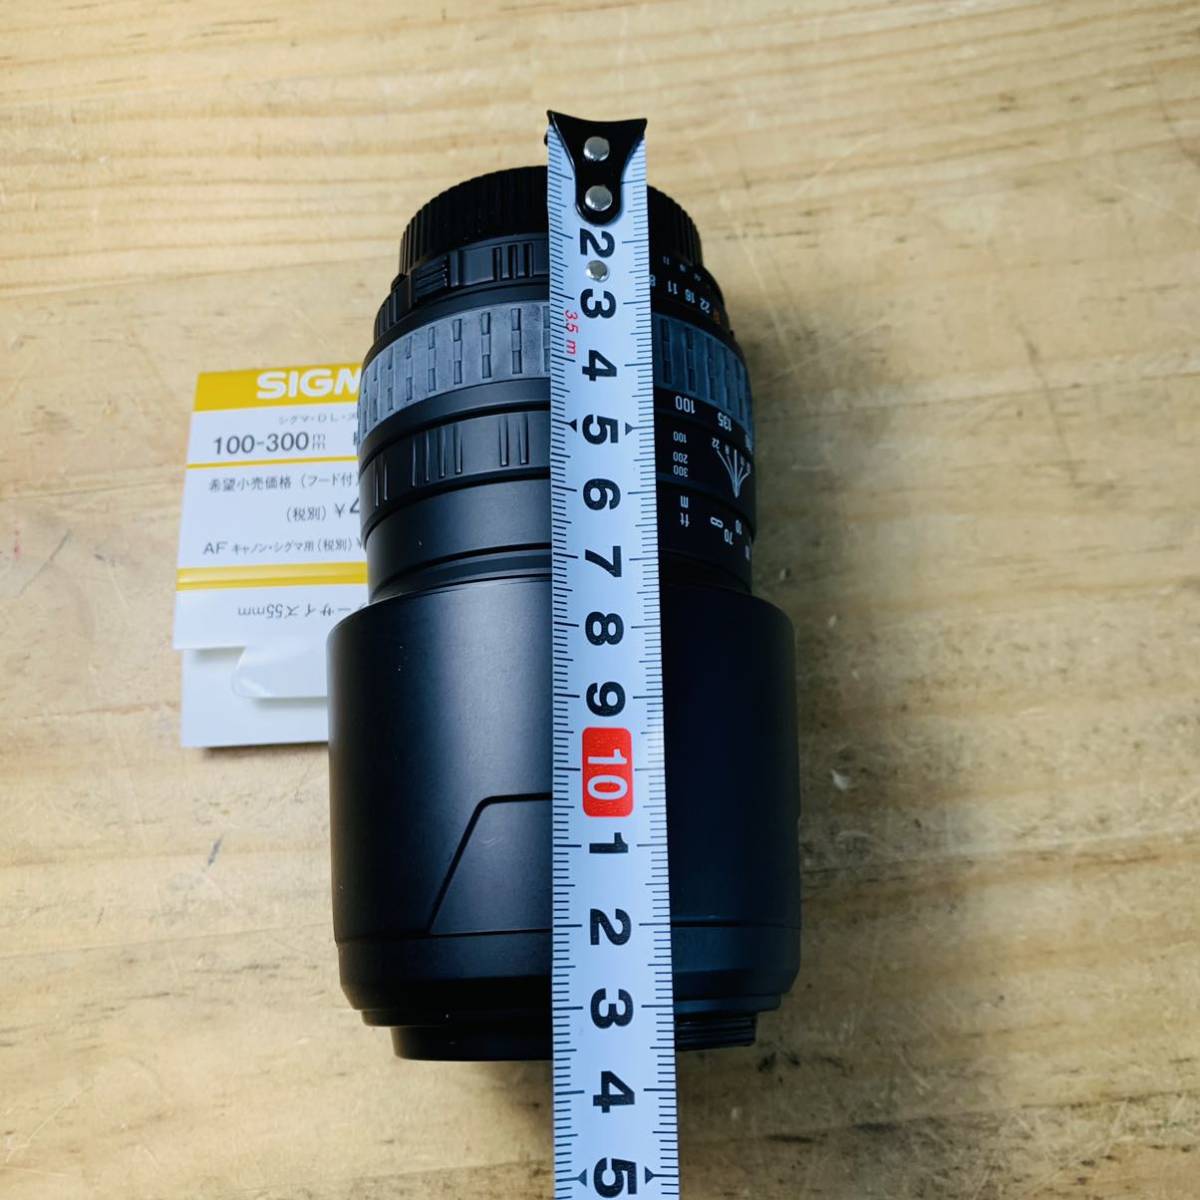 1X30636 SIGMA シグマ カメラレンズ 100-300 F4.5-6.7